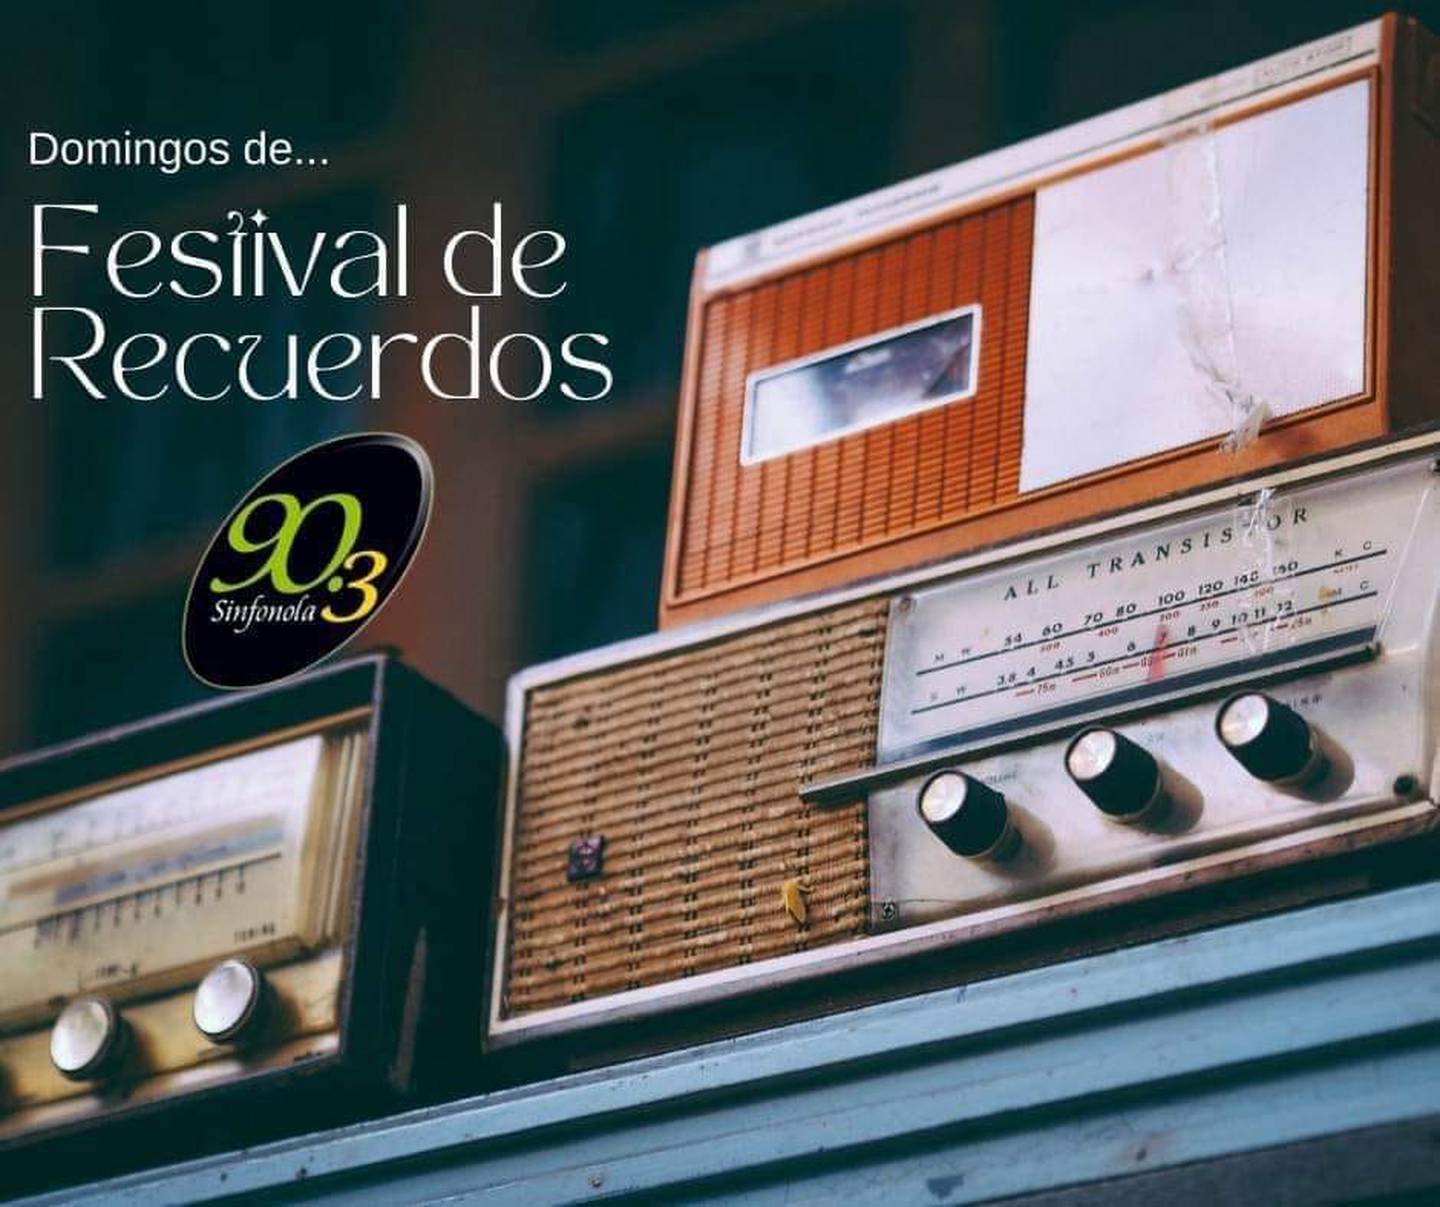 El programa 'Festival de recuerdos' de Sinfonola se mantuvo al aire en esa emisora durante 21 años.  Antes se emitía por radio Rumbo.